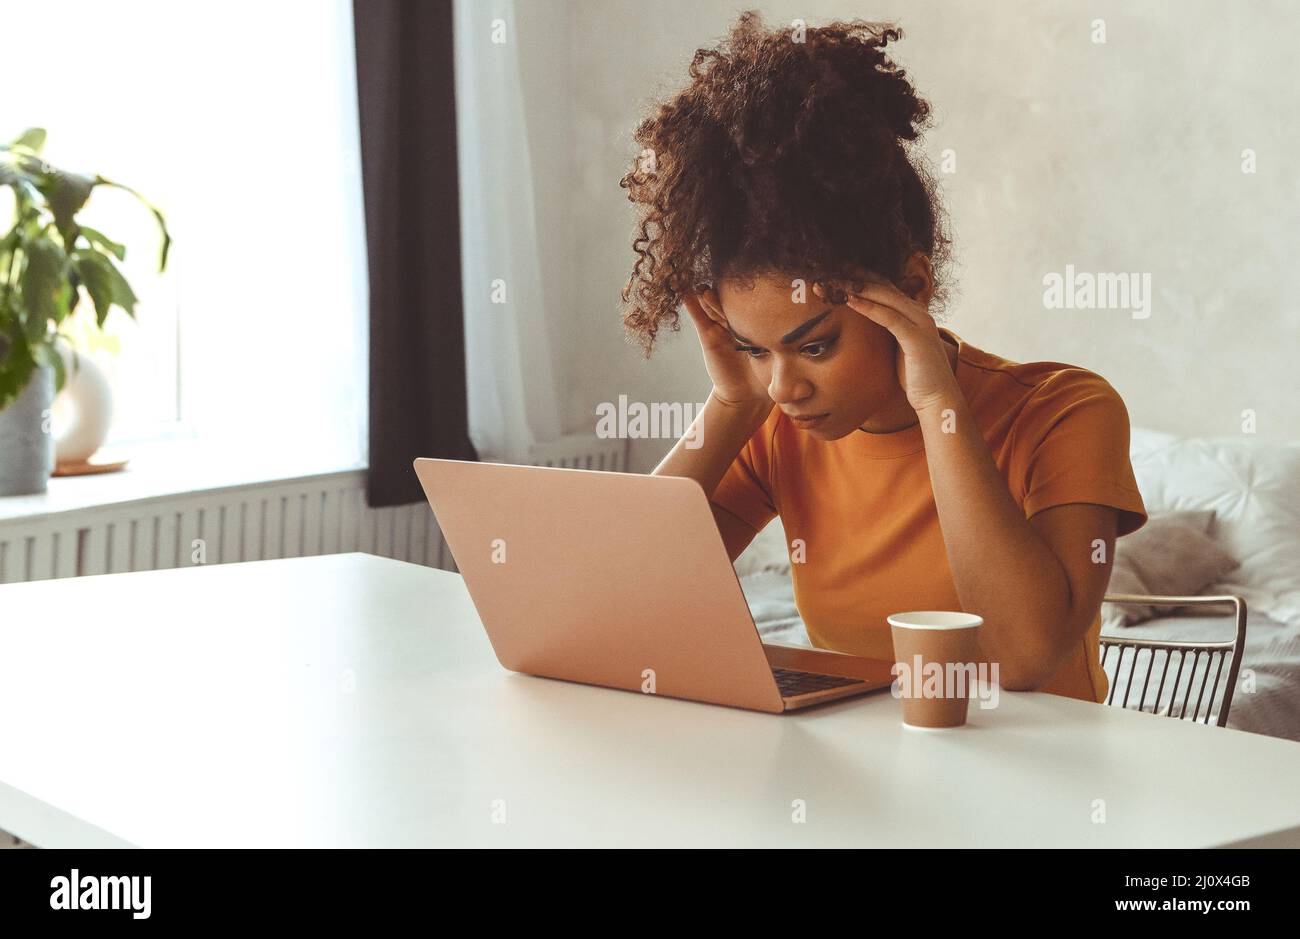 Frustrierte junge afrikanisch abstammende Frau zu Hause vor dem Laptop und erhielt E-Mails mit schlechten Nachrichten Stockfoto